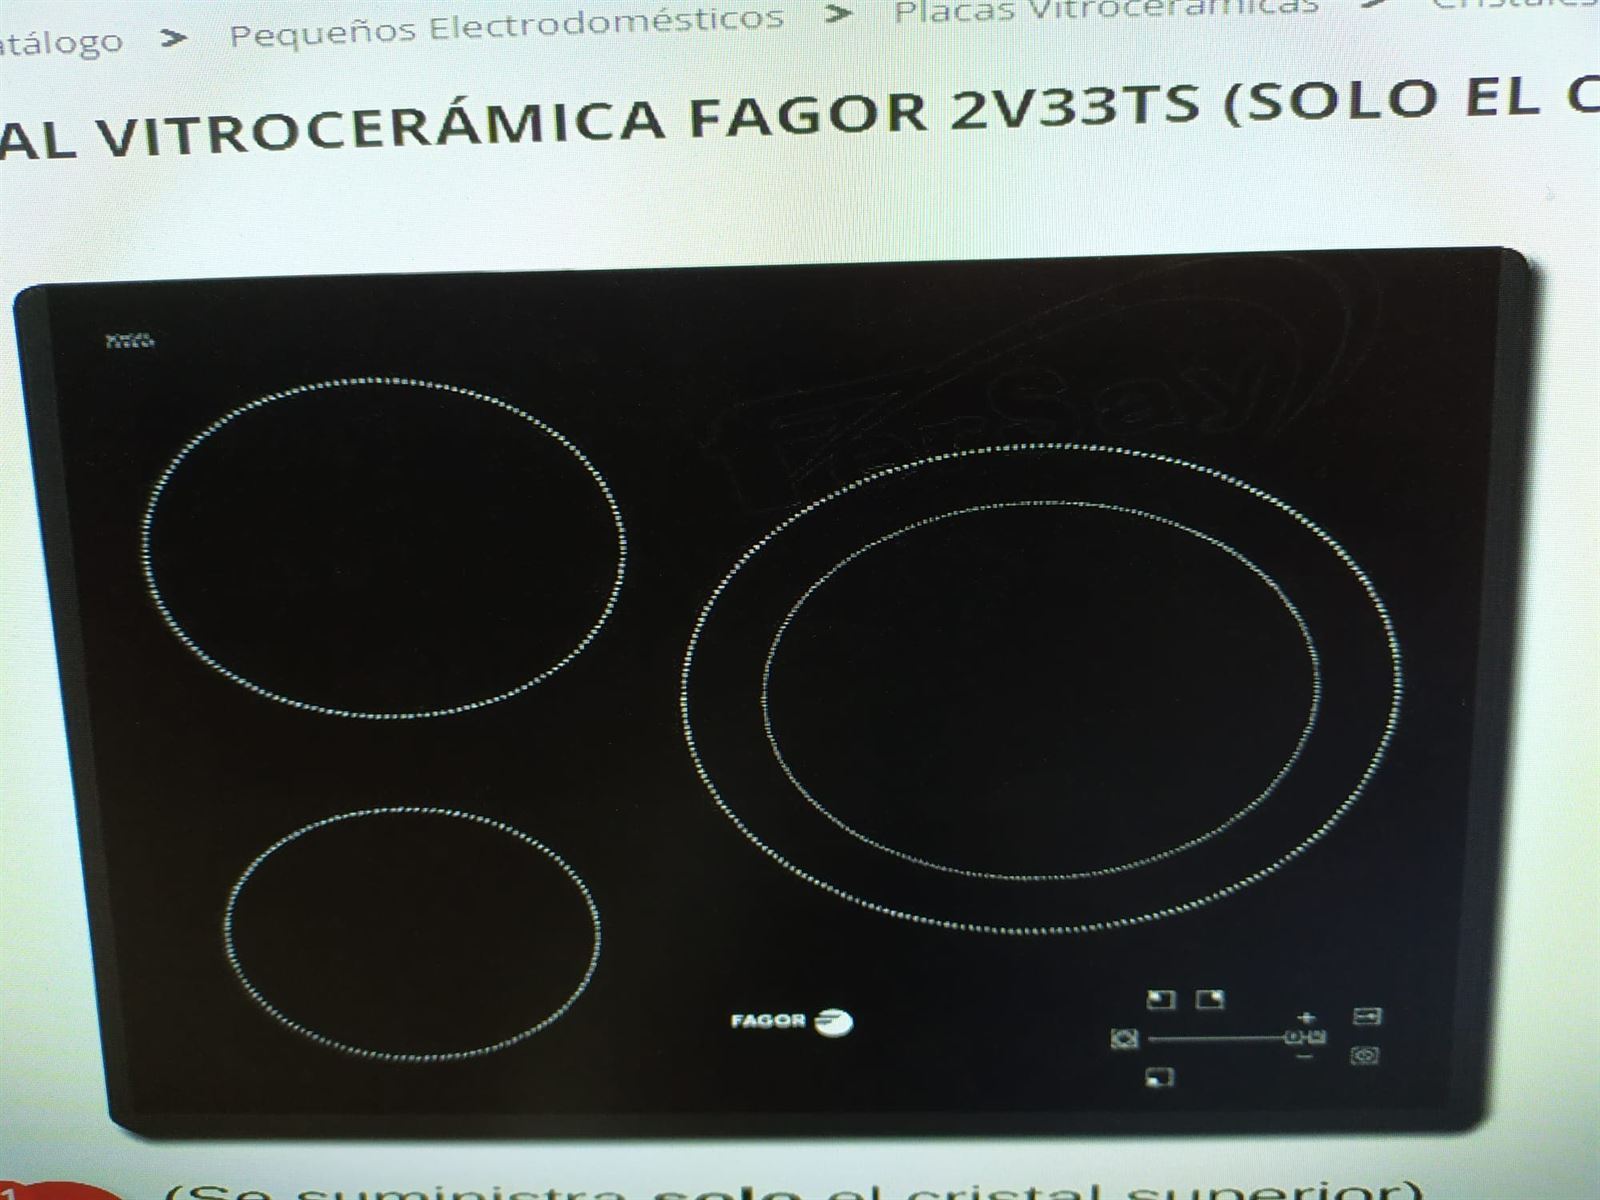 Vitrocerámica de Inducción FAGOR 3IF331AS 3 Fuegos